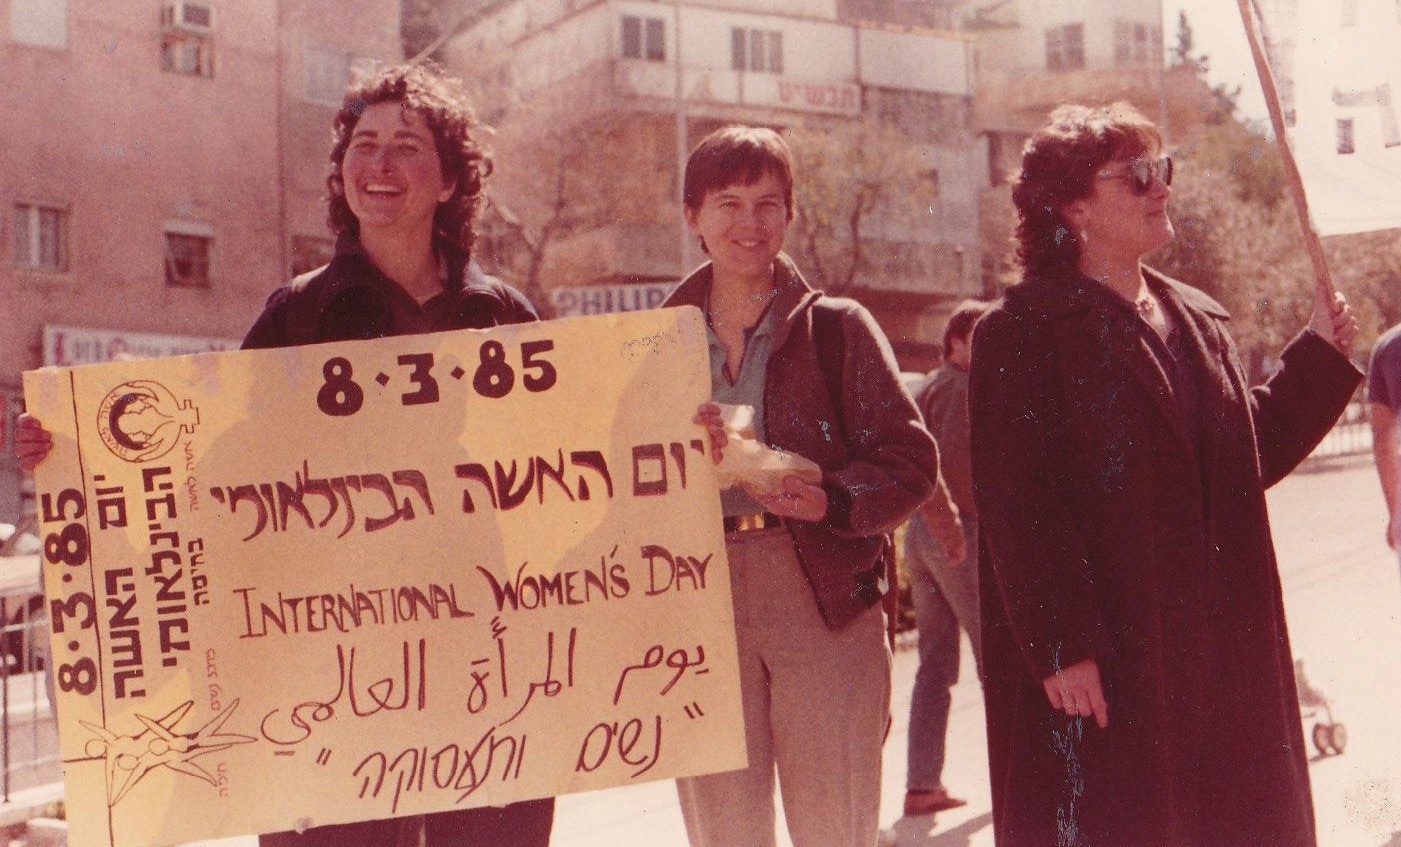 הפגנה לרגל יום האשה הבין לאומי (צילום: באדיבות ארכיון אשה לאשה)